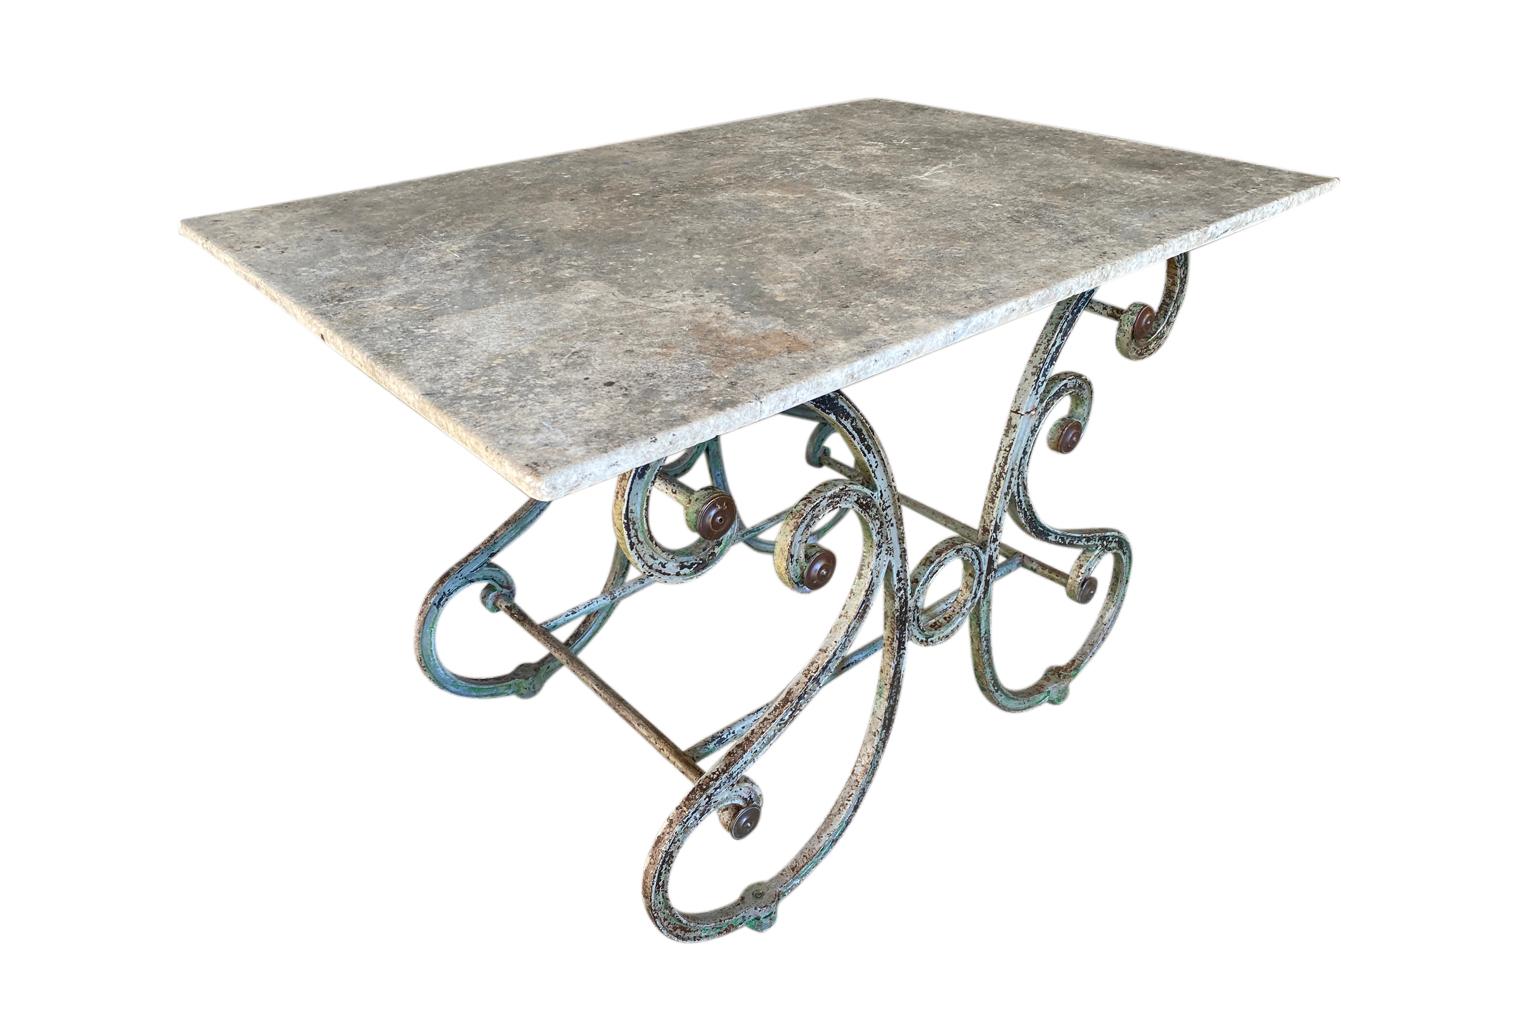 Magnifique table de boucher du sud de la France, datant de la fin du XIXe siècle. Magnifiquement construit dans le style Papillon - papillon - avec une base en fonte et son plateau en marbre d'origine. Les tables comme celle-ci étaient à l'origine